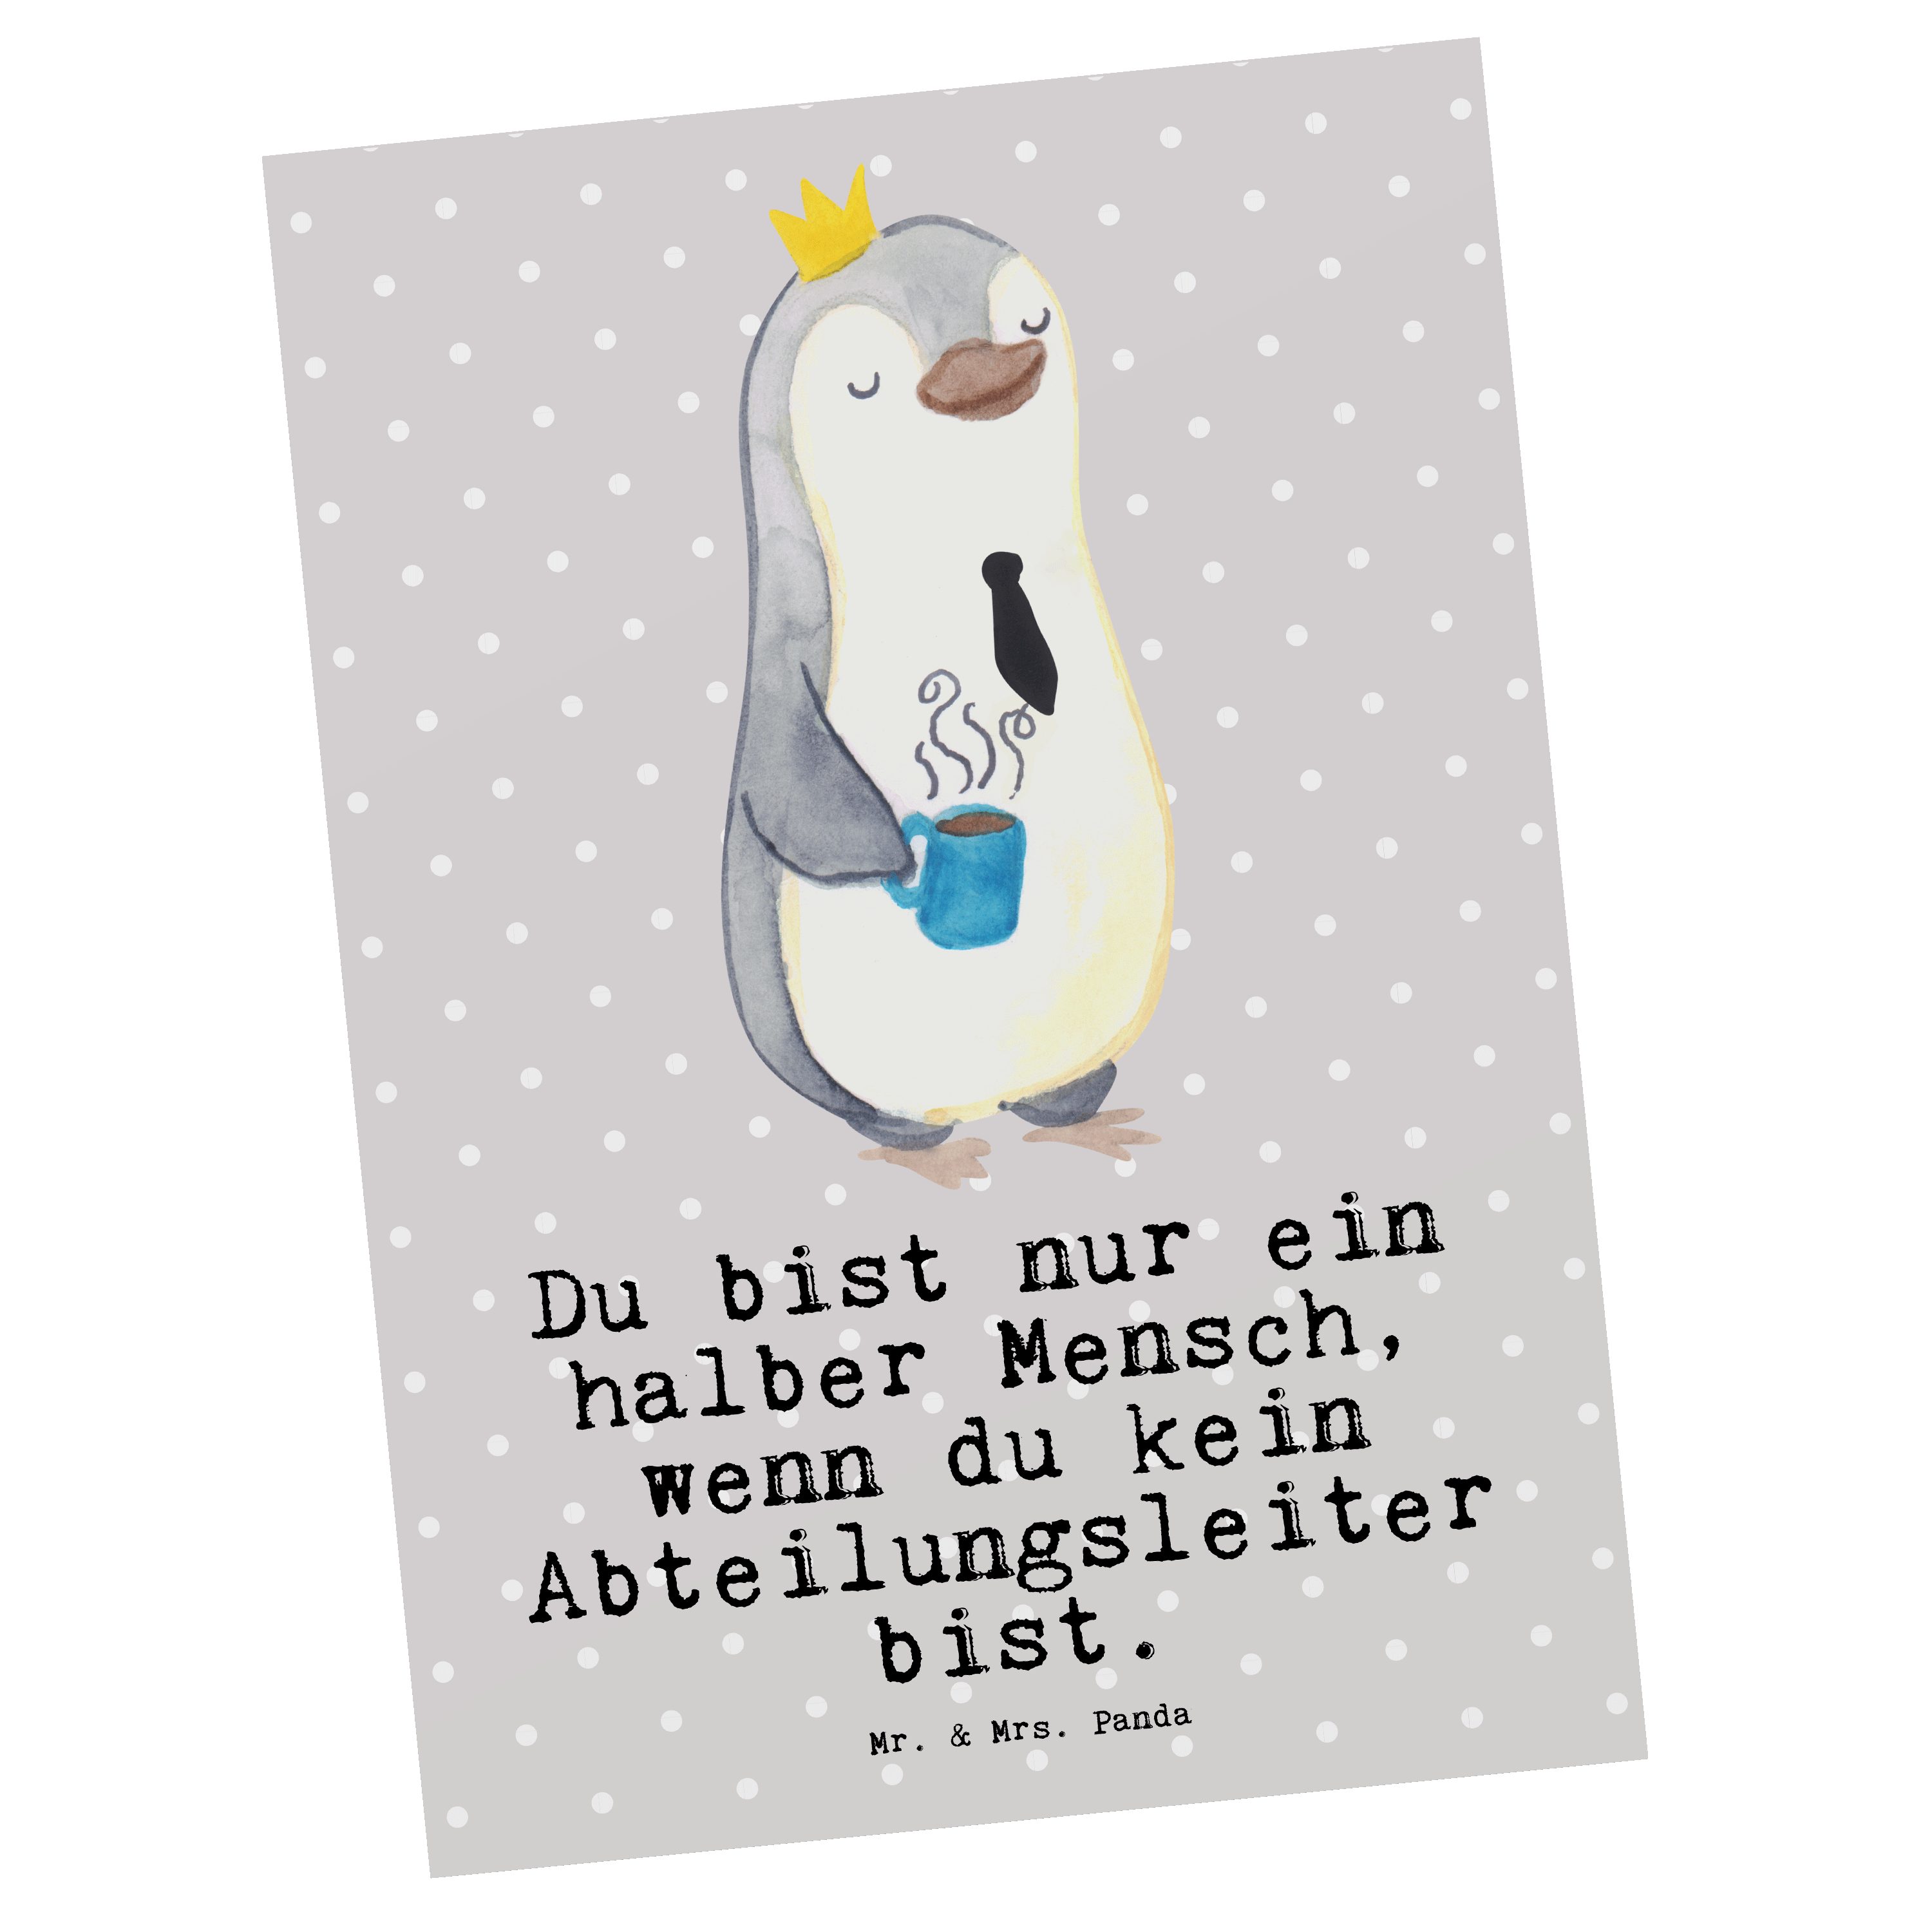 Mr. & Mrs. Panda Postkarte Abteilungsleiter mit Herz - Grau Pastell - Geschenk, Morgens, Geburts